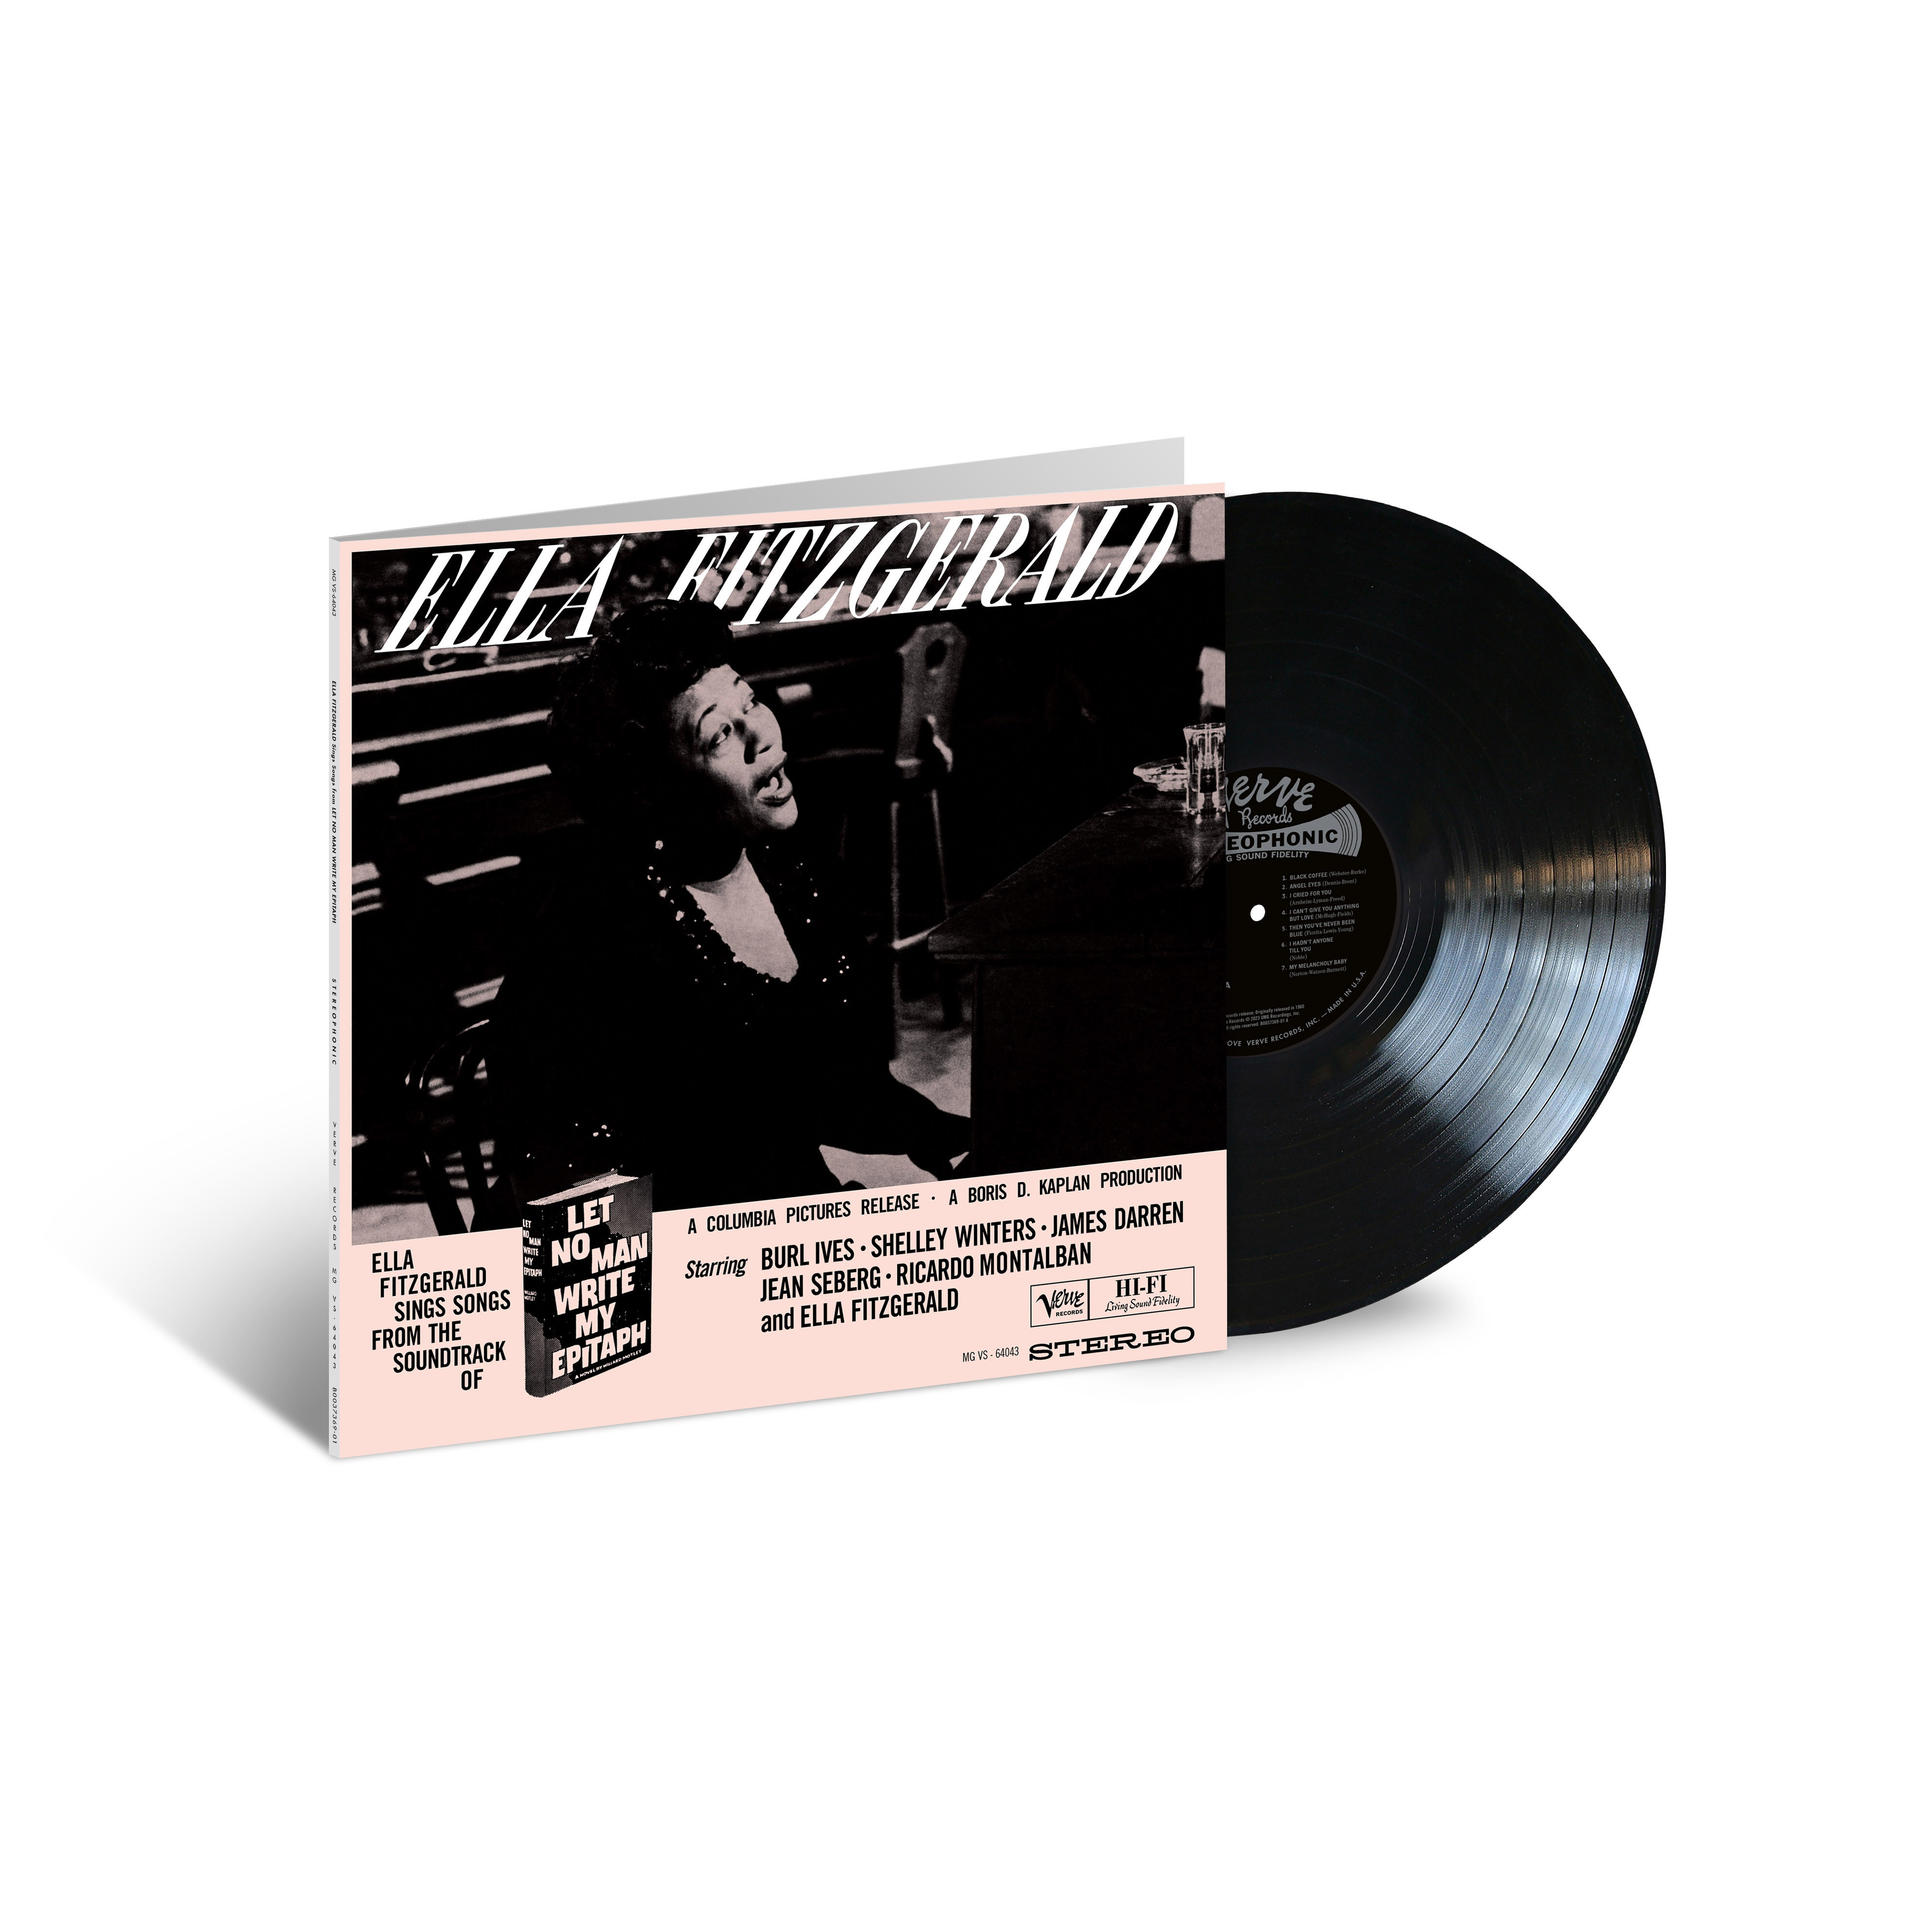 Ella Fitzgerald - Let no - Sounds) Write (Acoustic Epitaph (Vinyl) man My